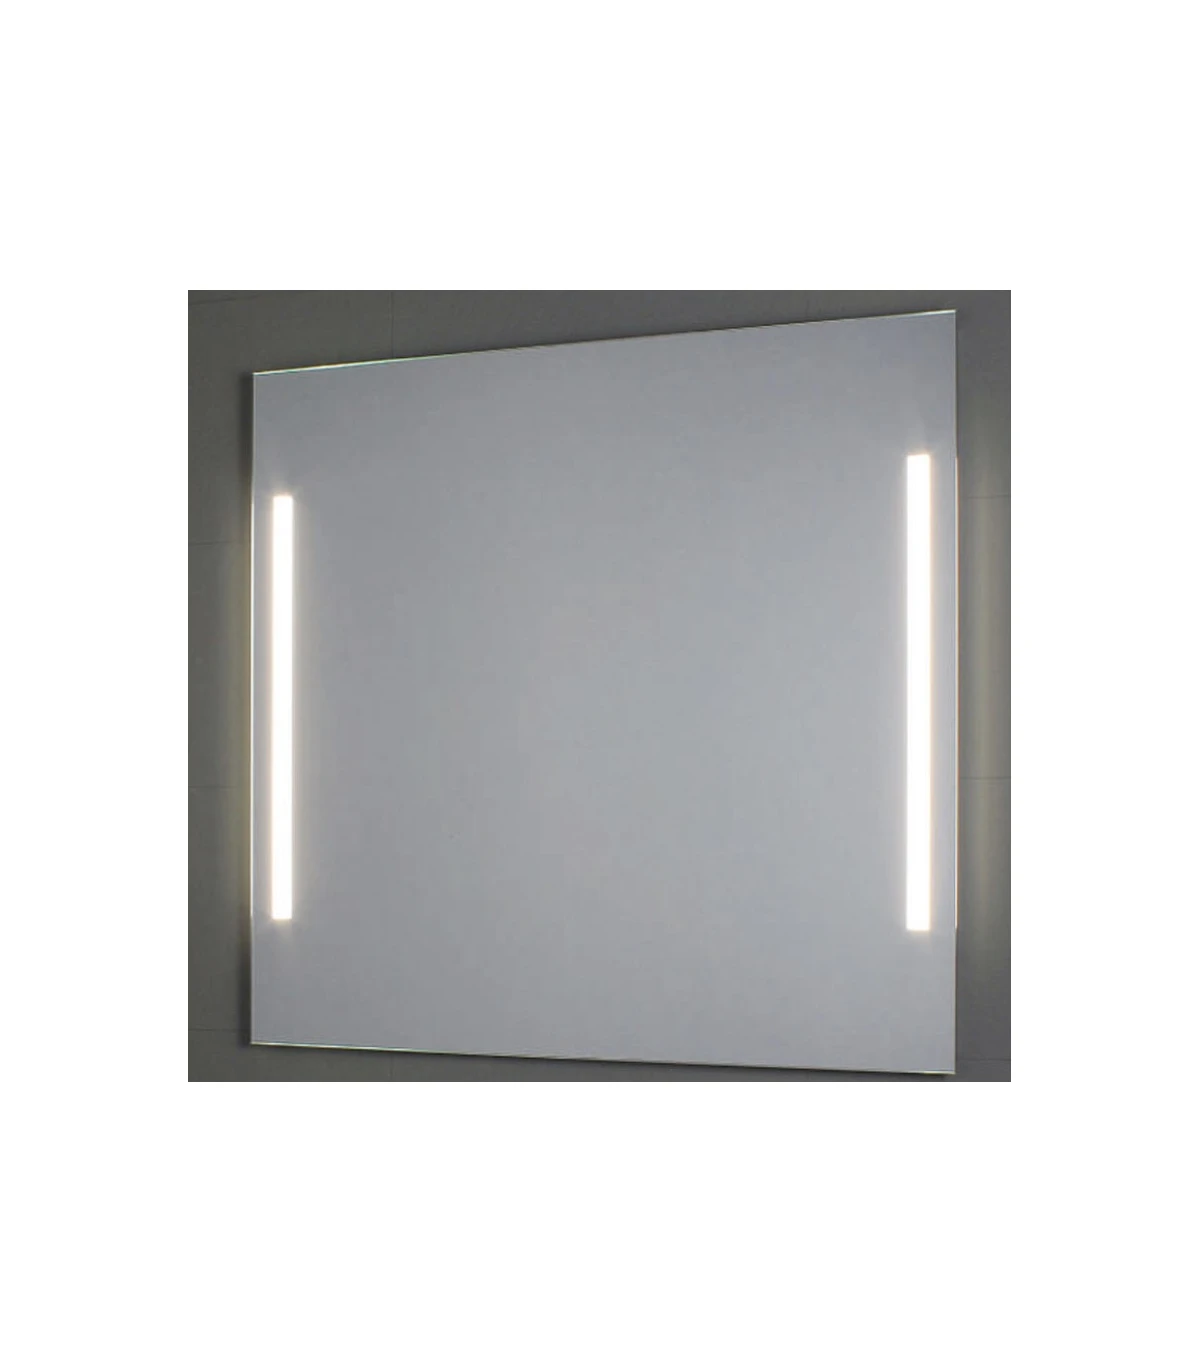 Specchio con luci laterali a LED Koh-I-Noor altezza 70 cm